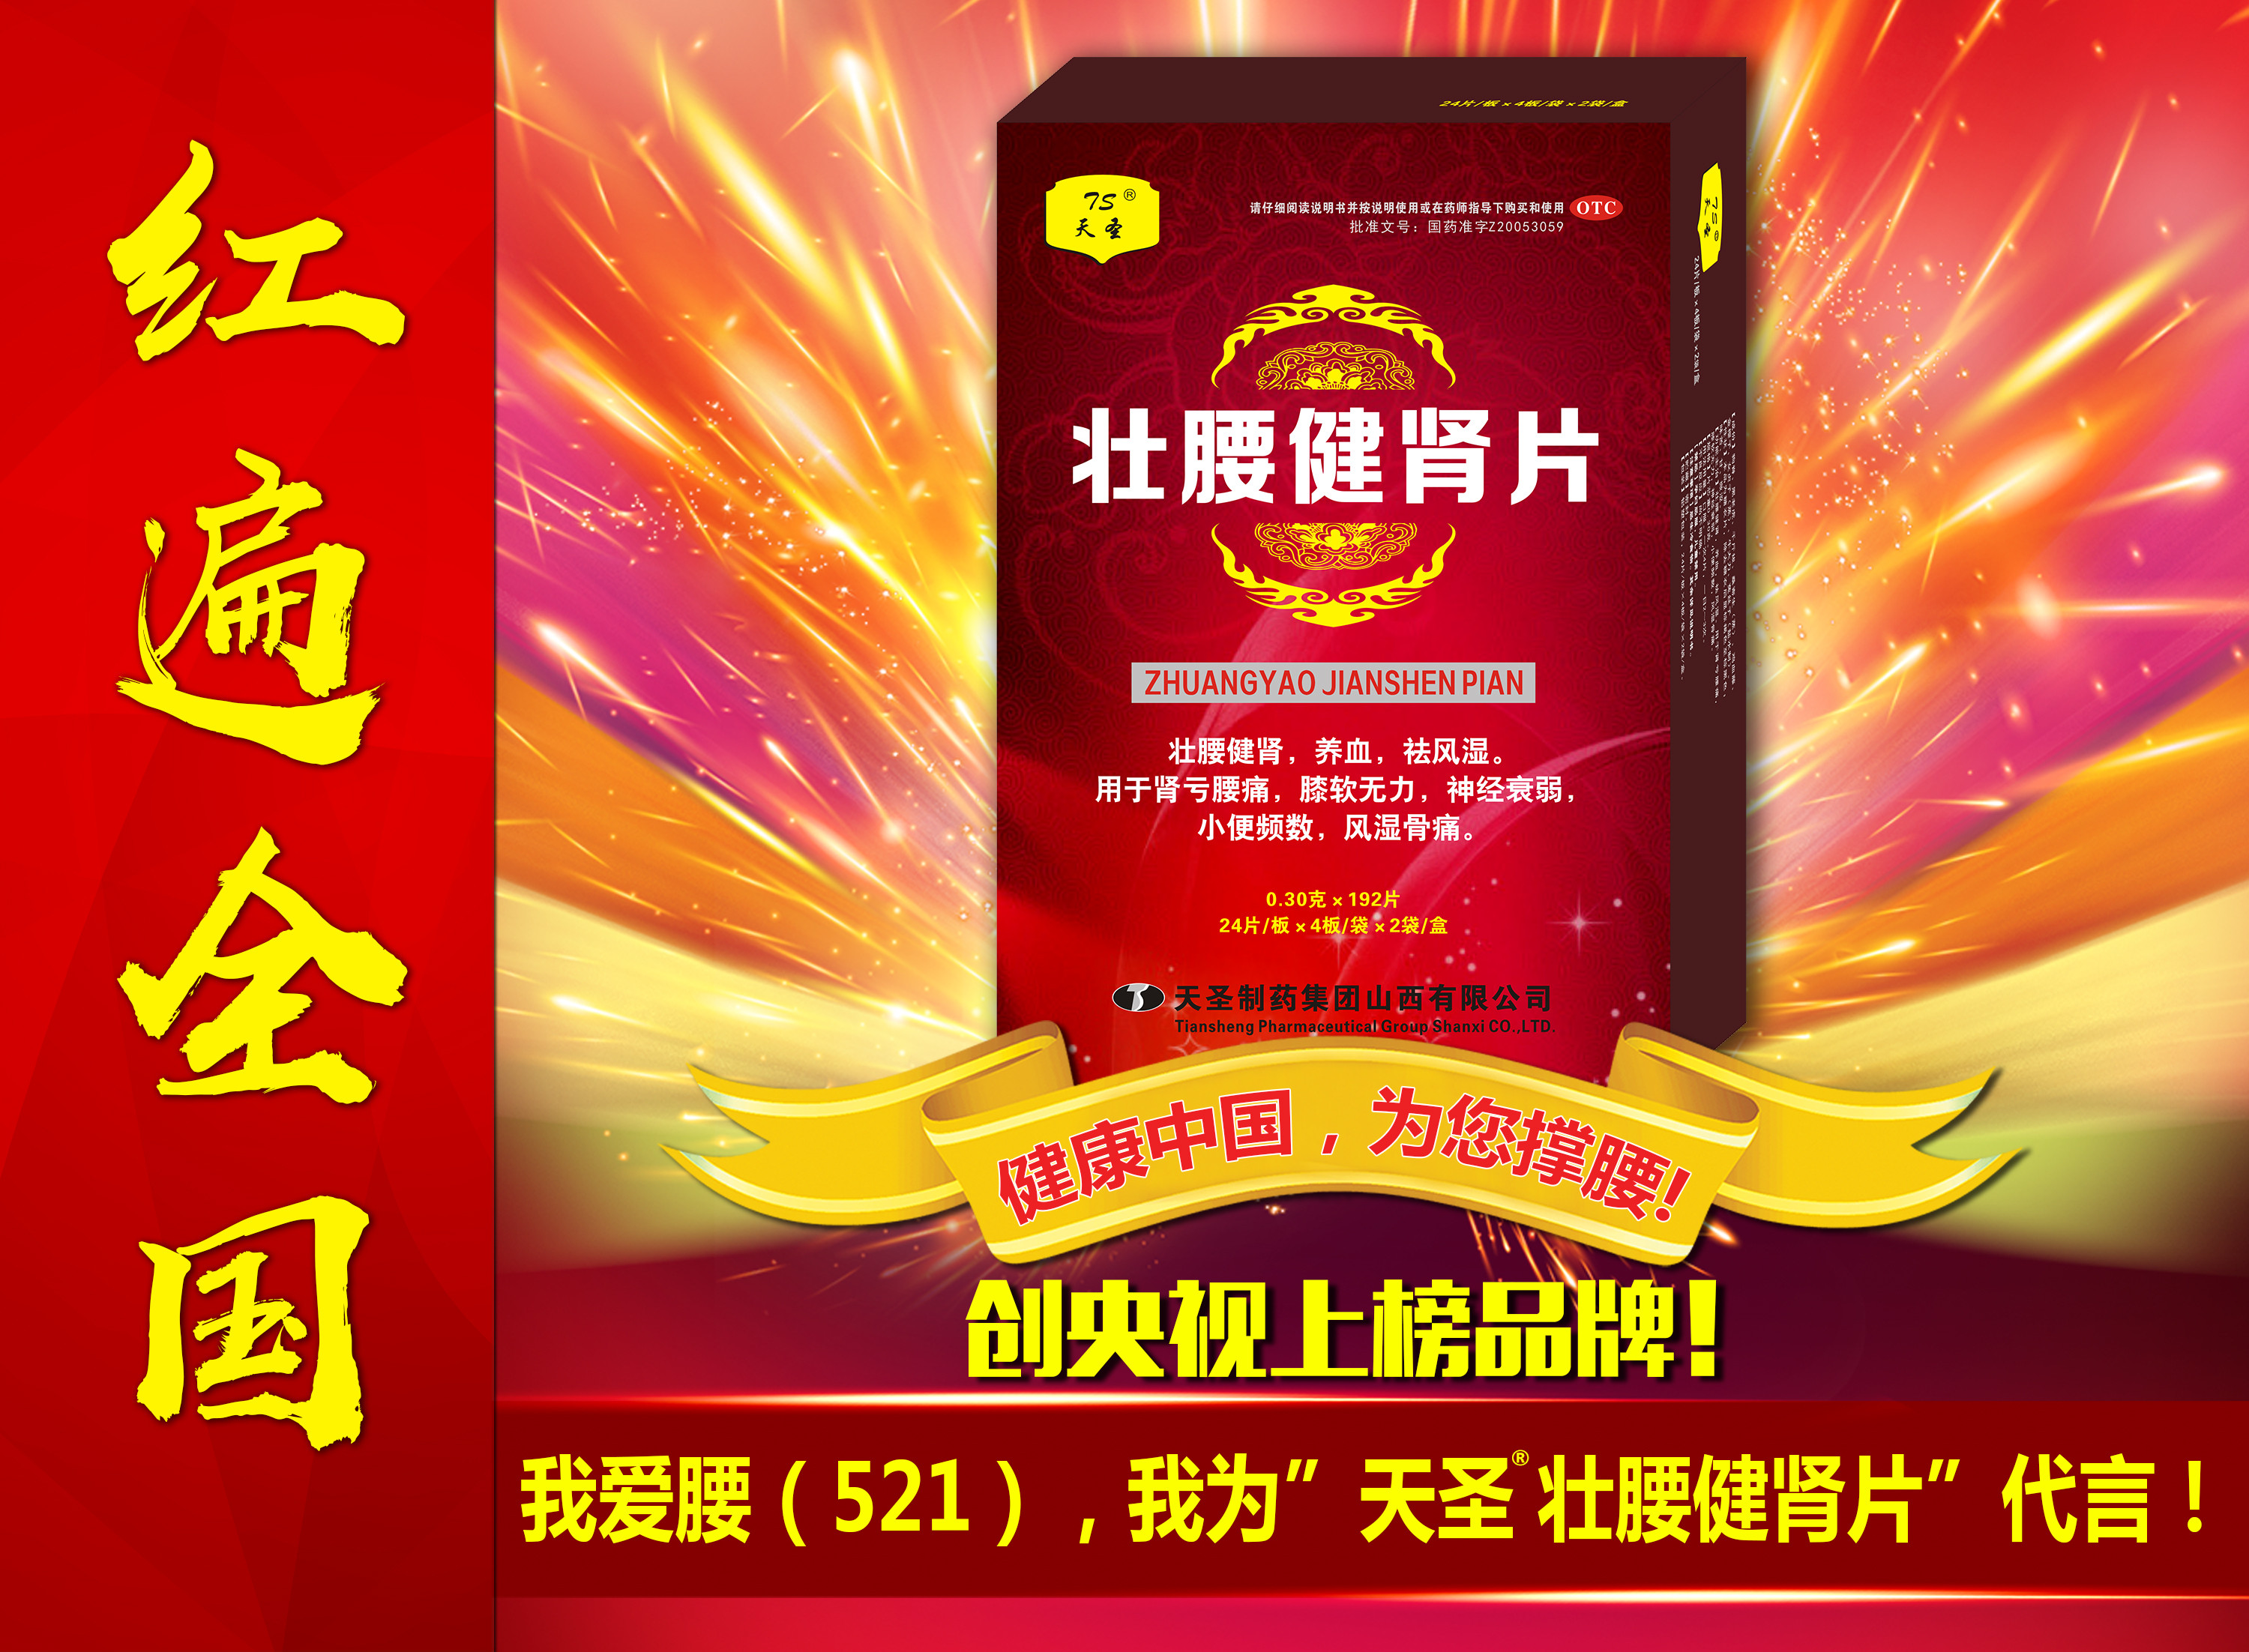 河北省唐山为央视上榜品牌『天圣壮腰健肾片』代言—"健康中国,为您